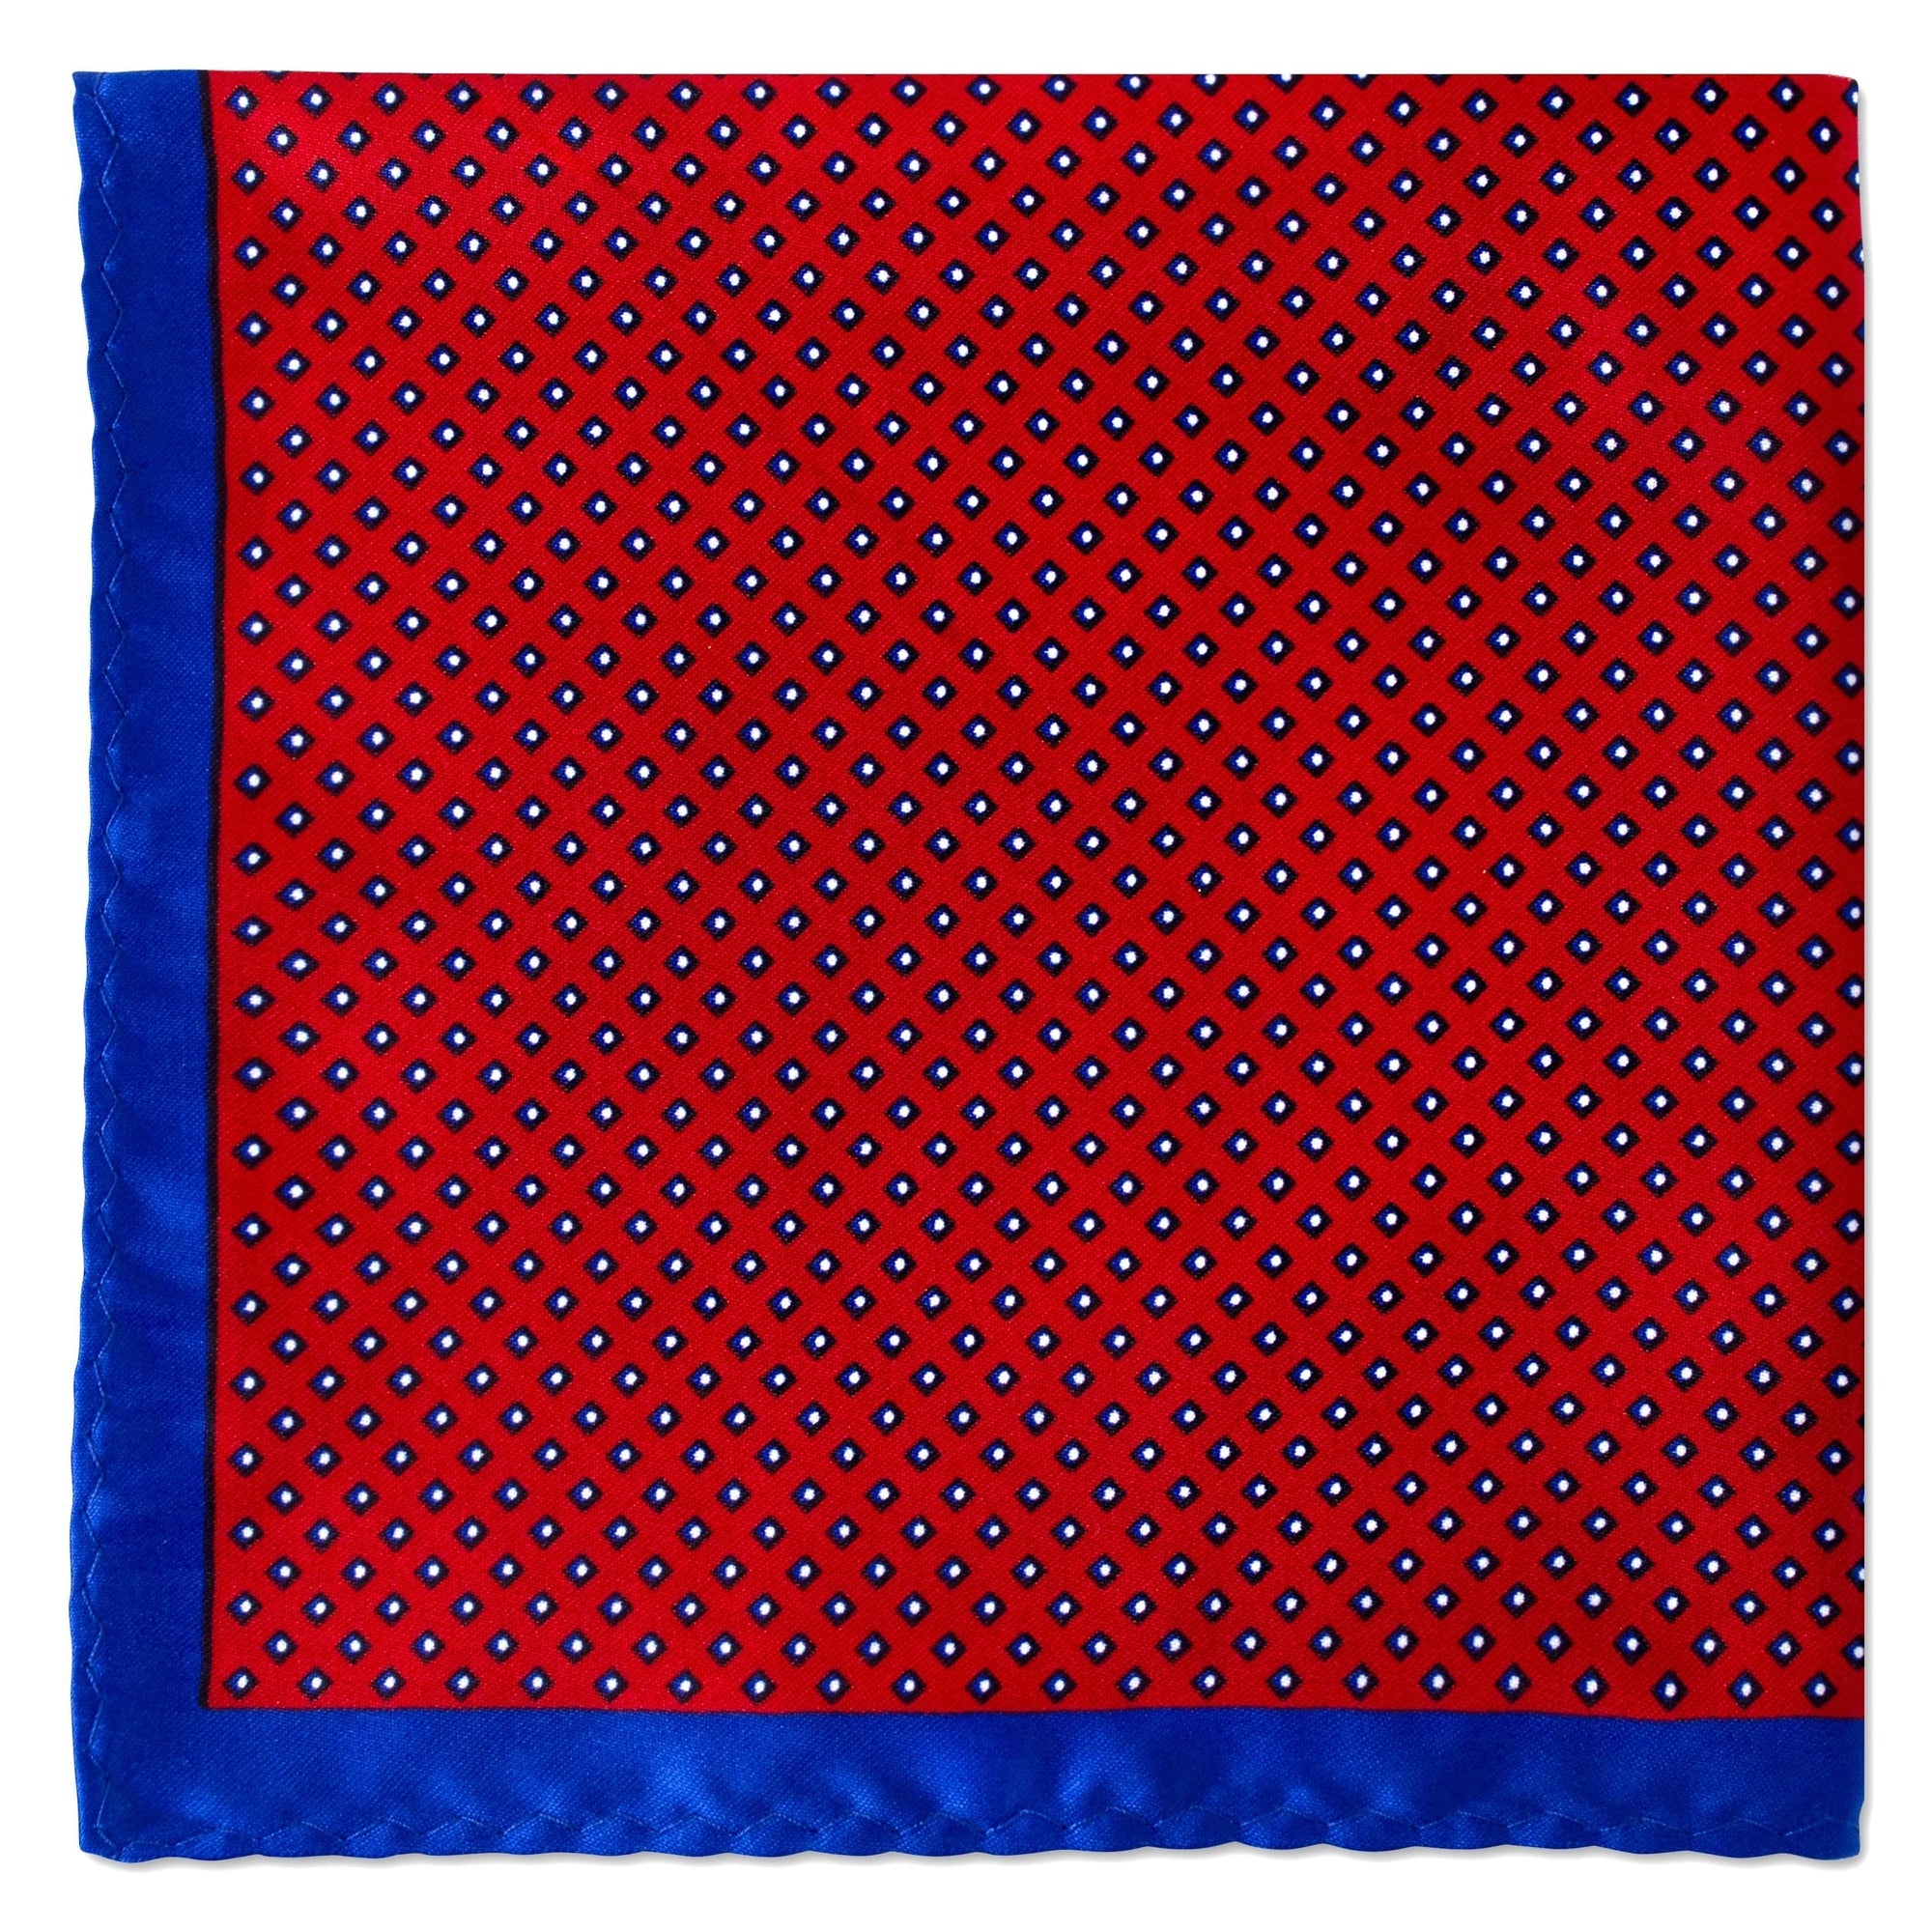 Square Dots Pocket Square-Pocket Squares-MarZthomson-Red-Cufflinks.com.sg